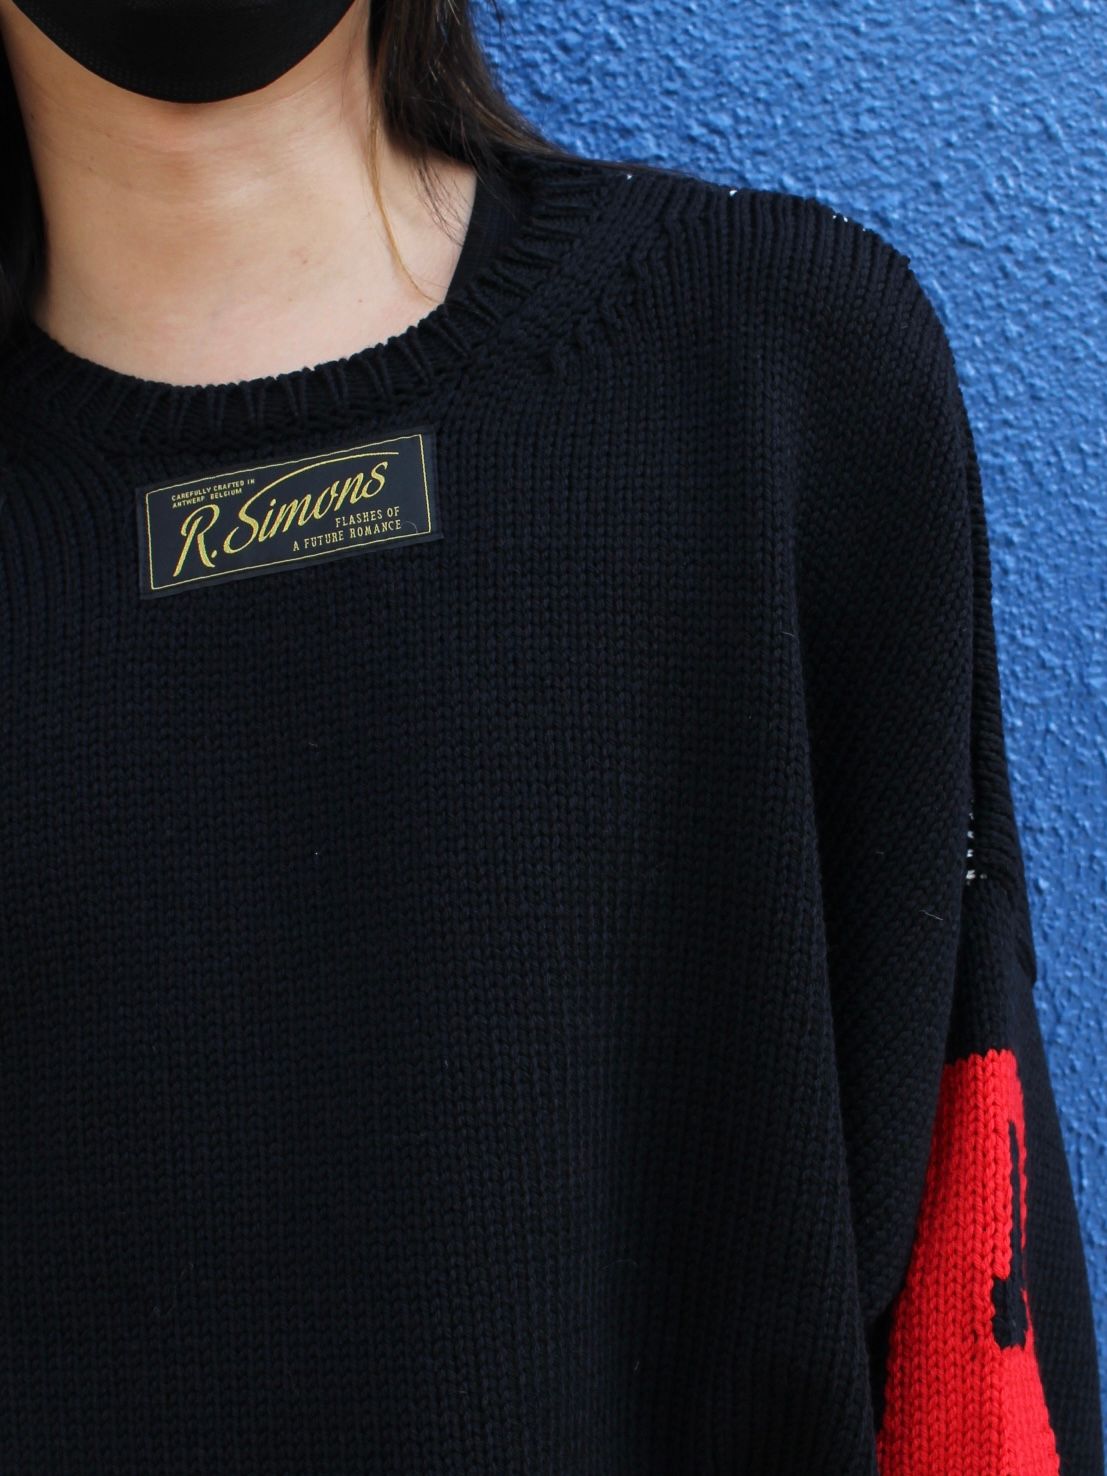 【22SS】オーバーサイズ ロゴ セーター / Oversized R sweater / ブラック - ブラック - 1(S)